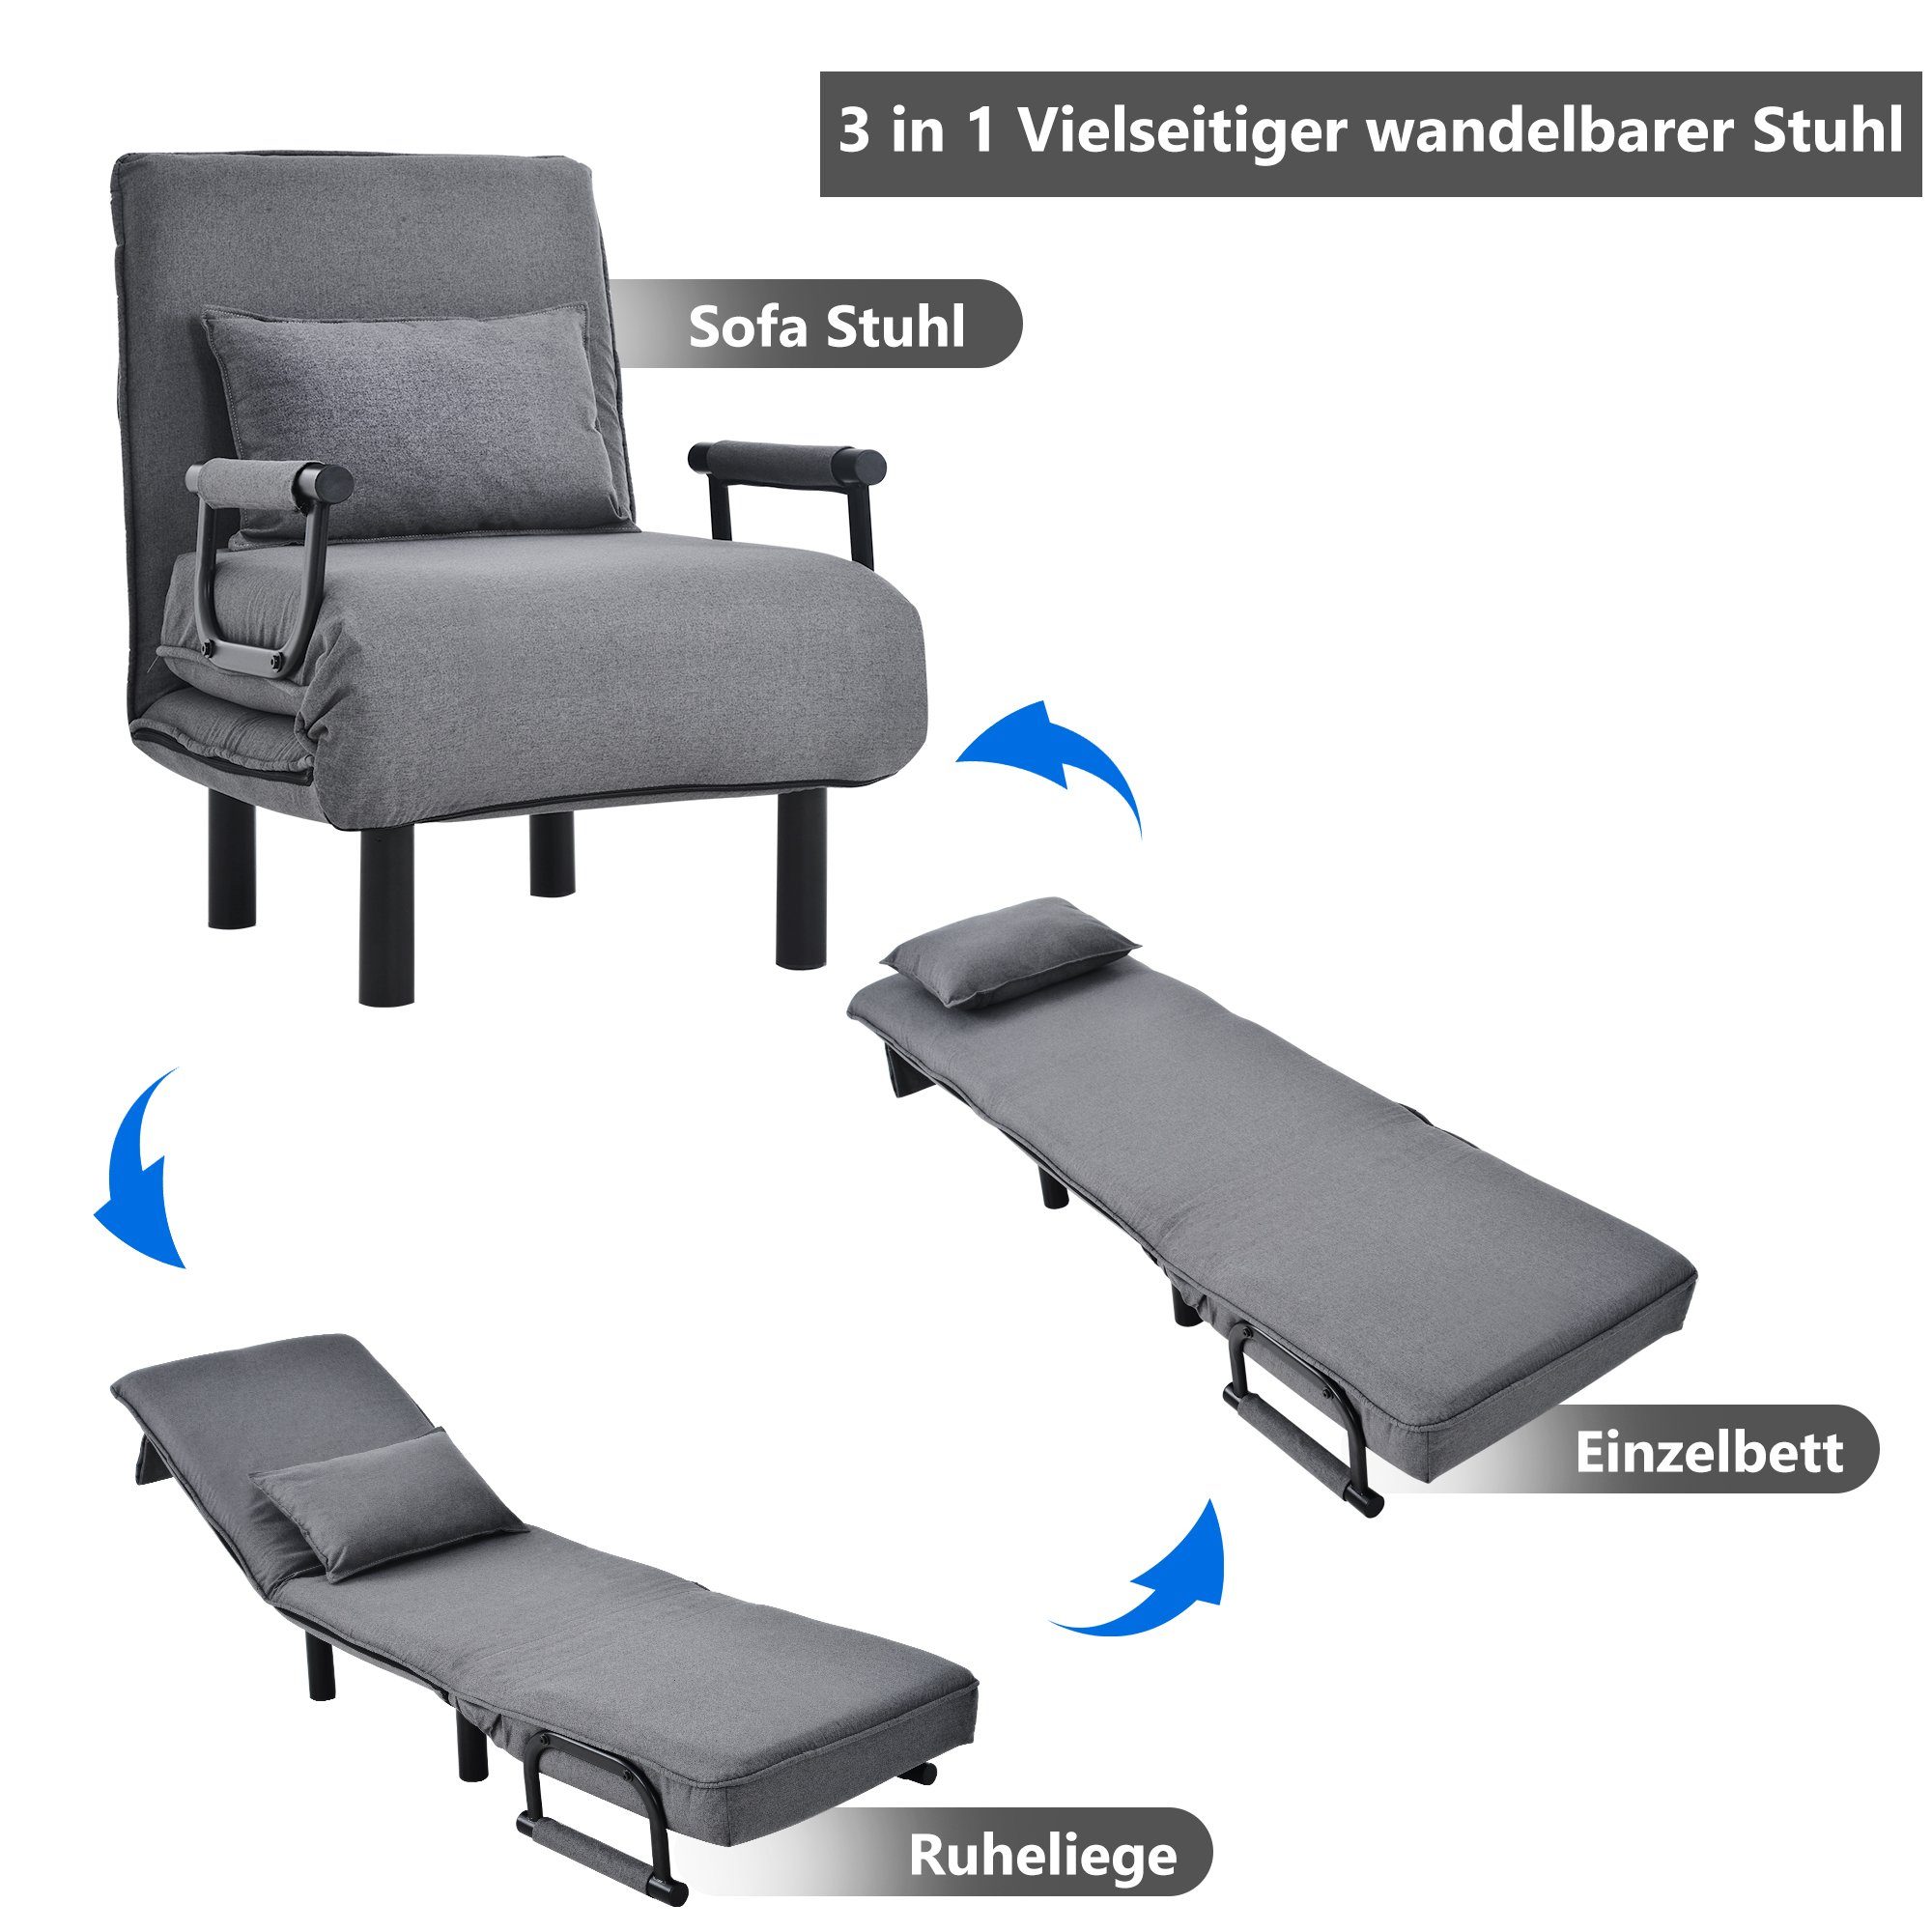 WISHDOR Schlafsofa Schlafsessel verstellbare Couch, Relaxsessel Bett Positionen 6 Stuhl Sessel Polsterstuhl Grau mit Rückenlehne